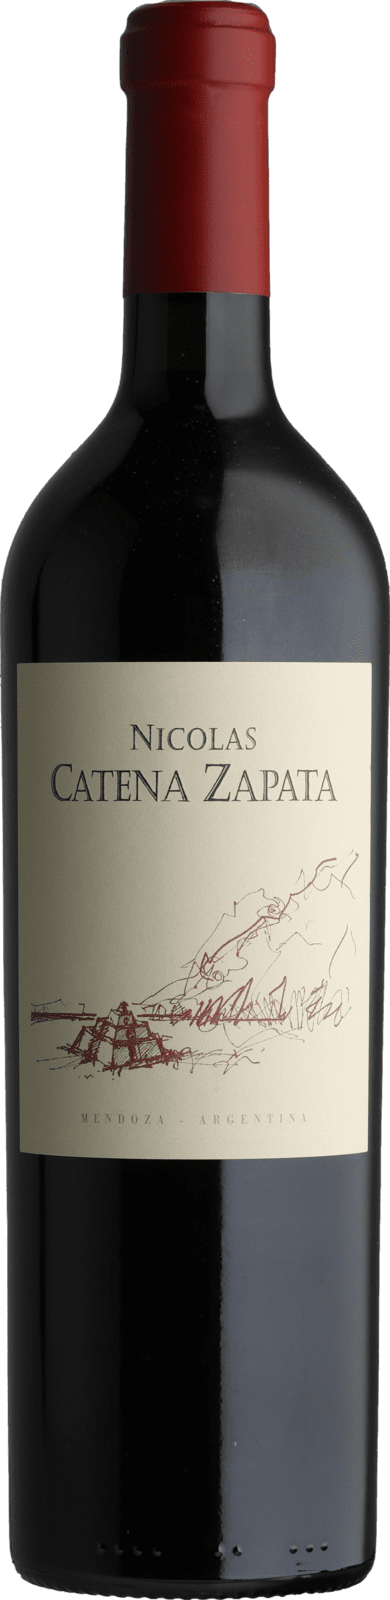 Catena Zapata Nicolas Catena Zapata 2016